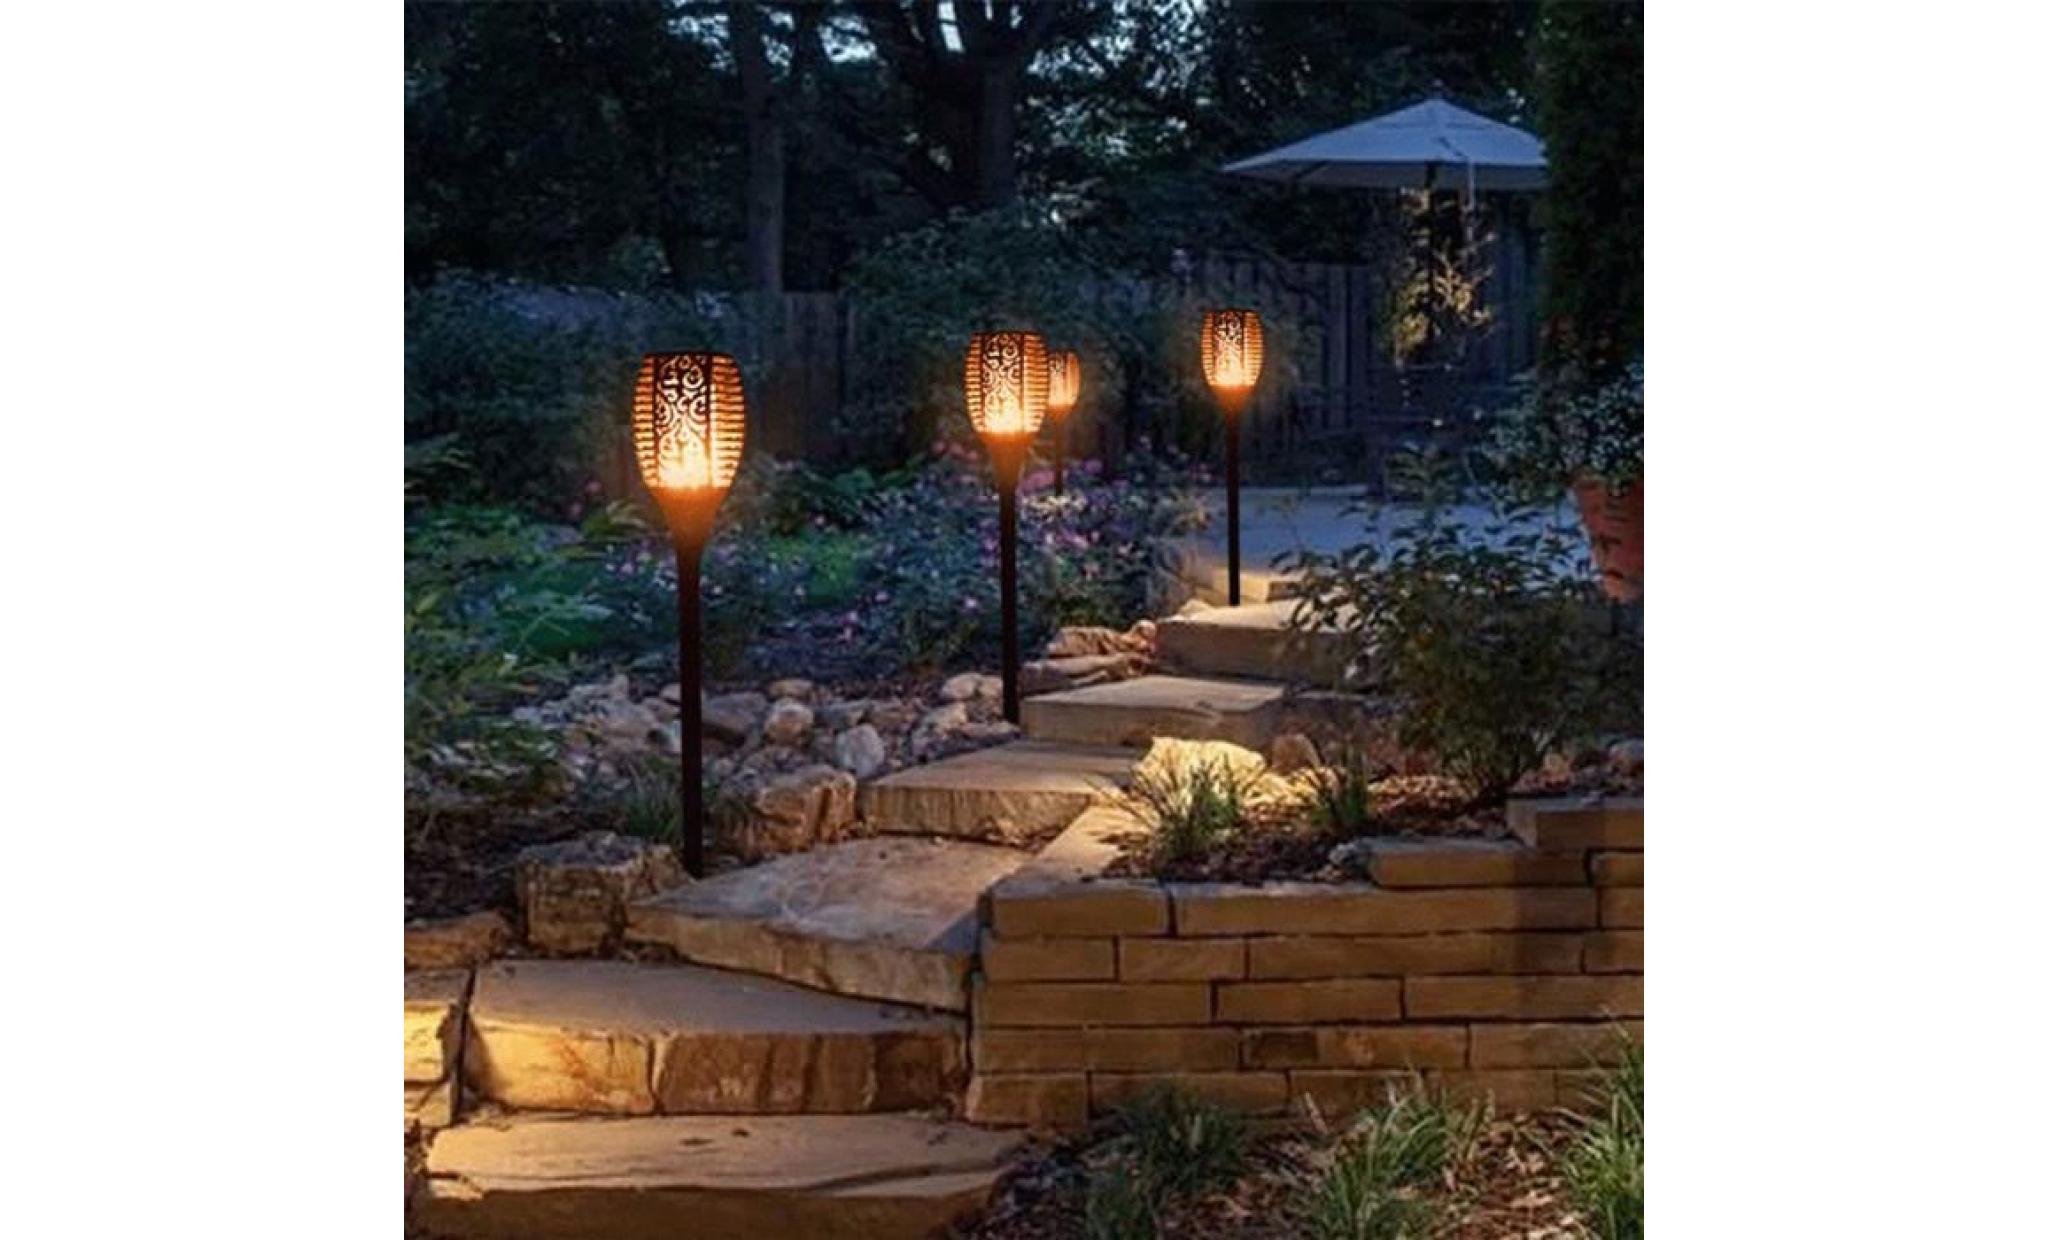 2pcs lumières extérieur étanche lanterne solaire lampe de jardin pathways jardin patio _led3457 pas cher